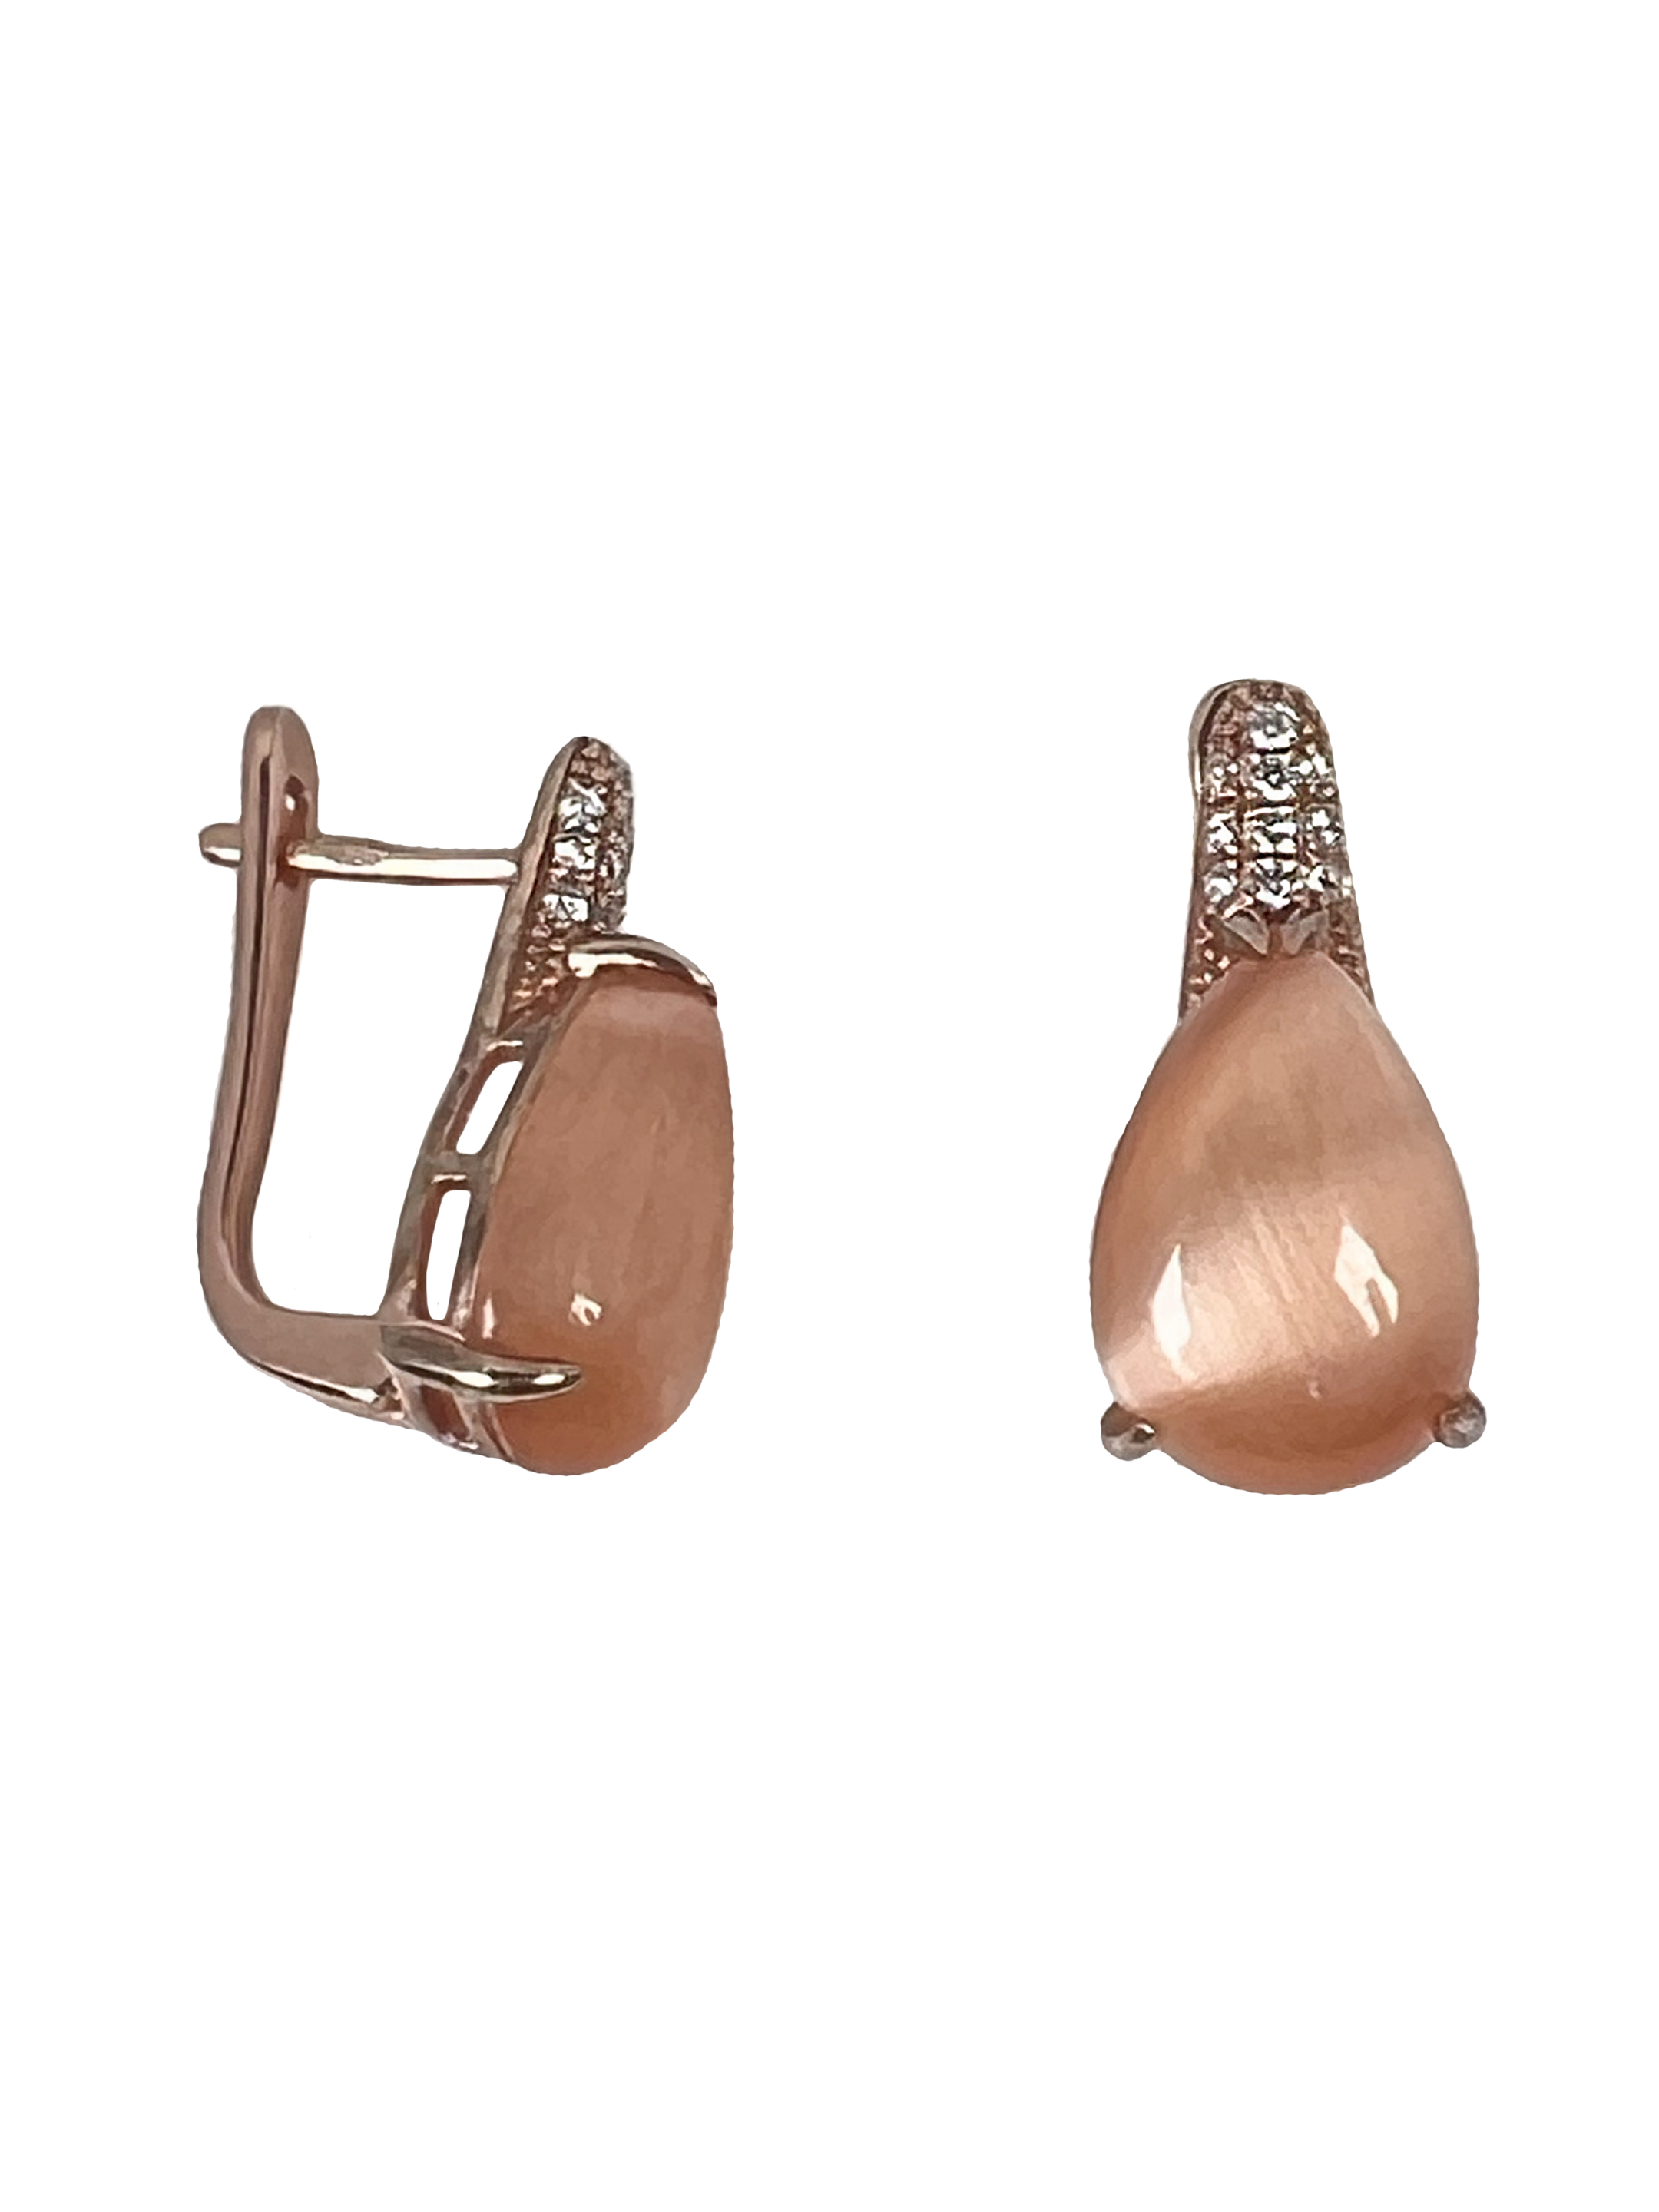 Ασημένια σκουλαρίκια με επιφανειακή επεξεργασία και ροζ πέτρες